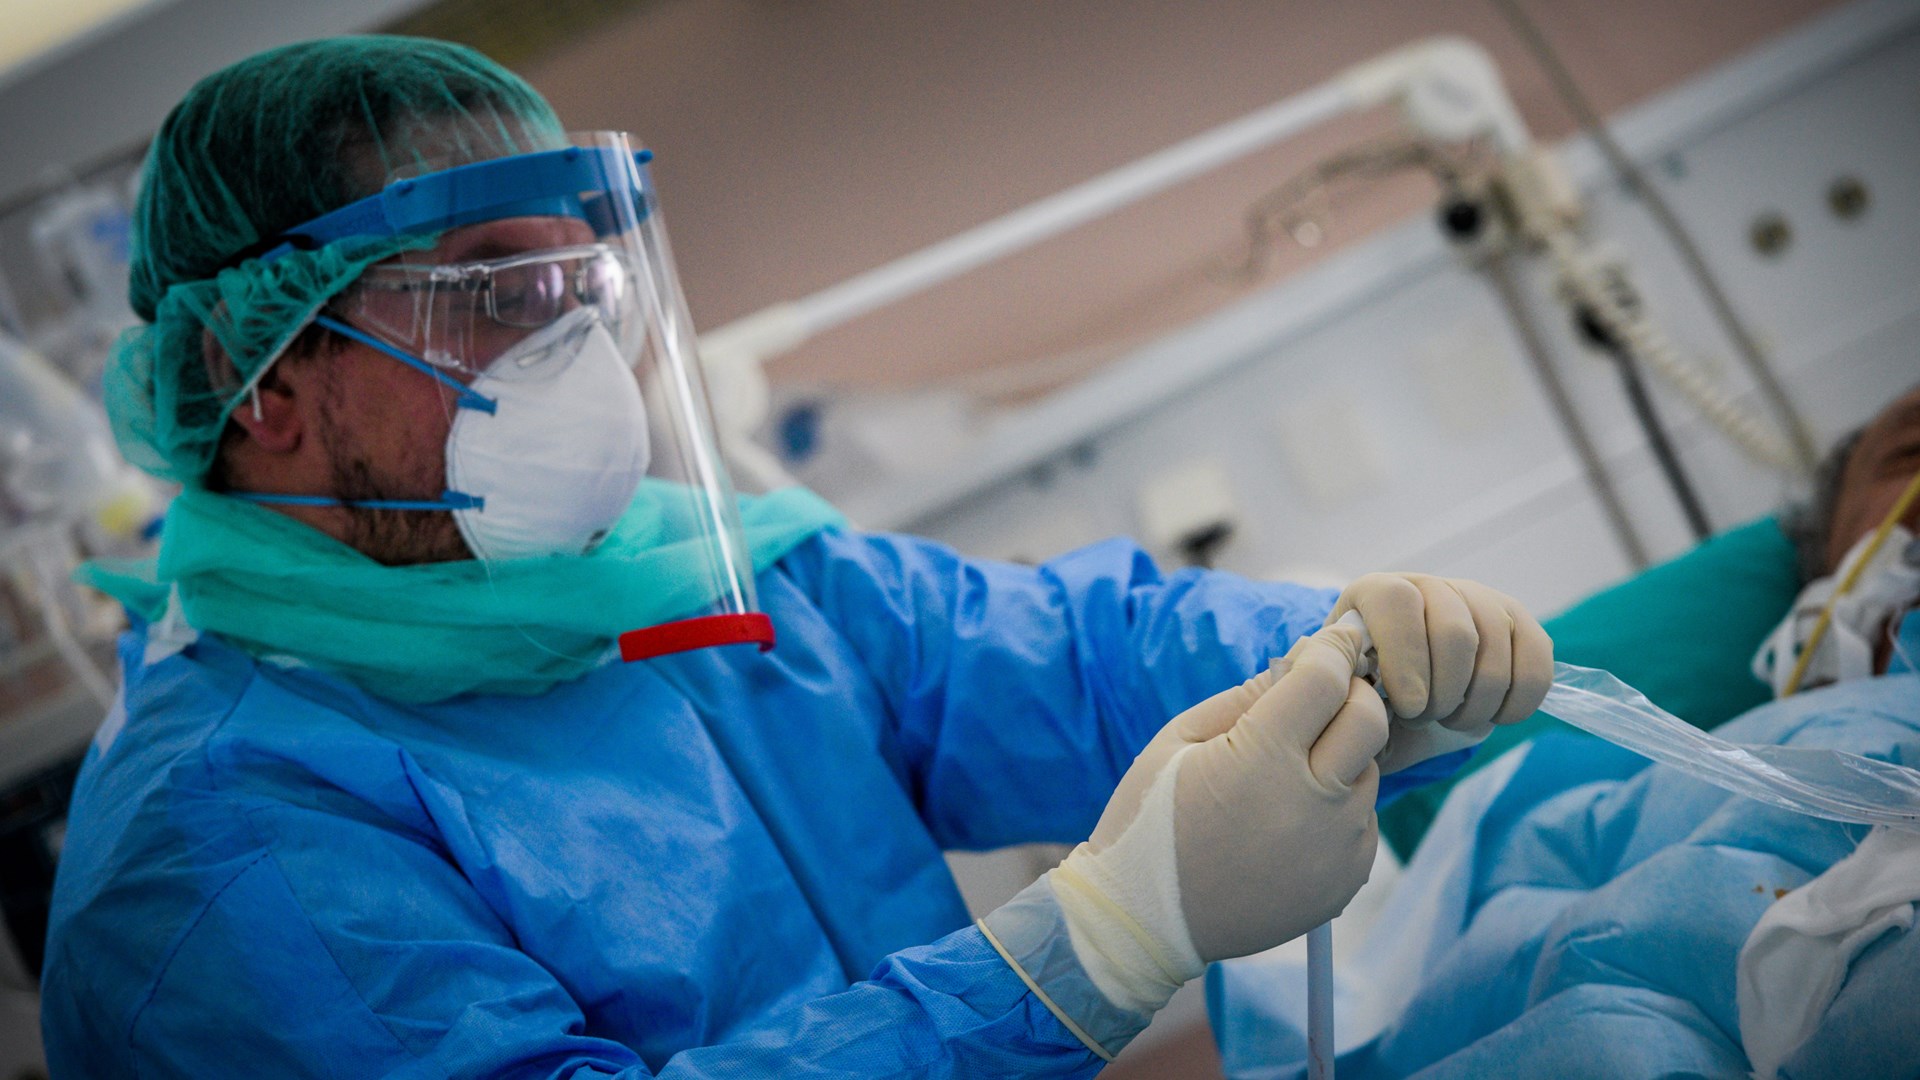 Κορονοϊός: Πέθανε 54χρονη νοσηλεύτρια από τη Δράμα – Θετικοί 70 εργαζόμενοι στο νοσοκομείο της πόλης